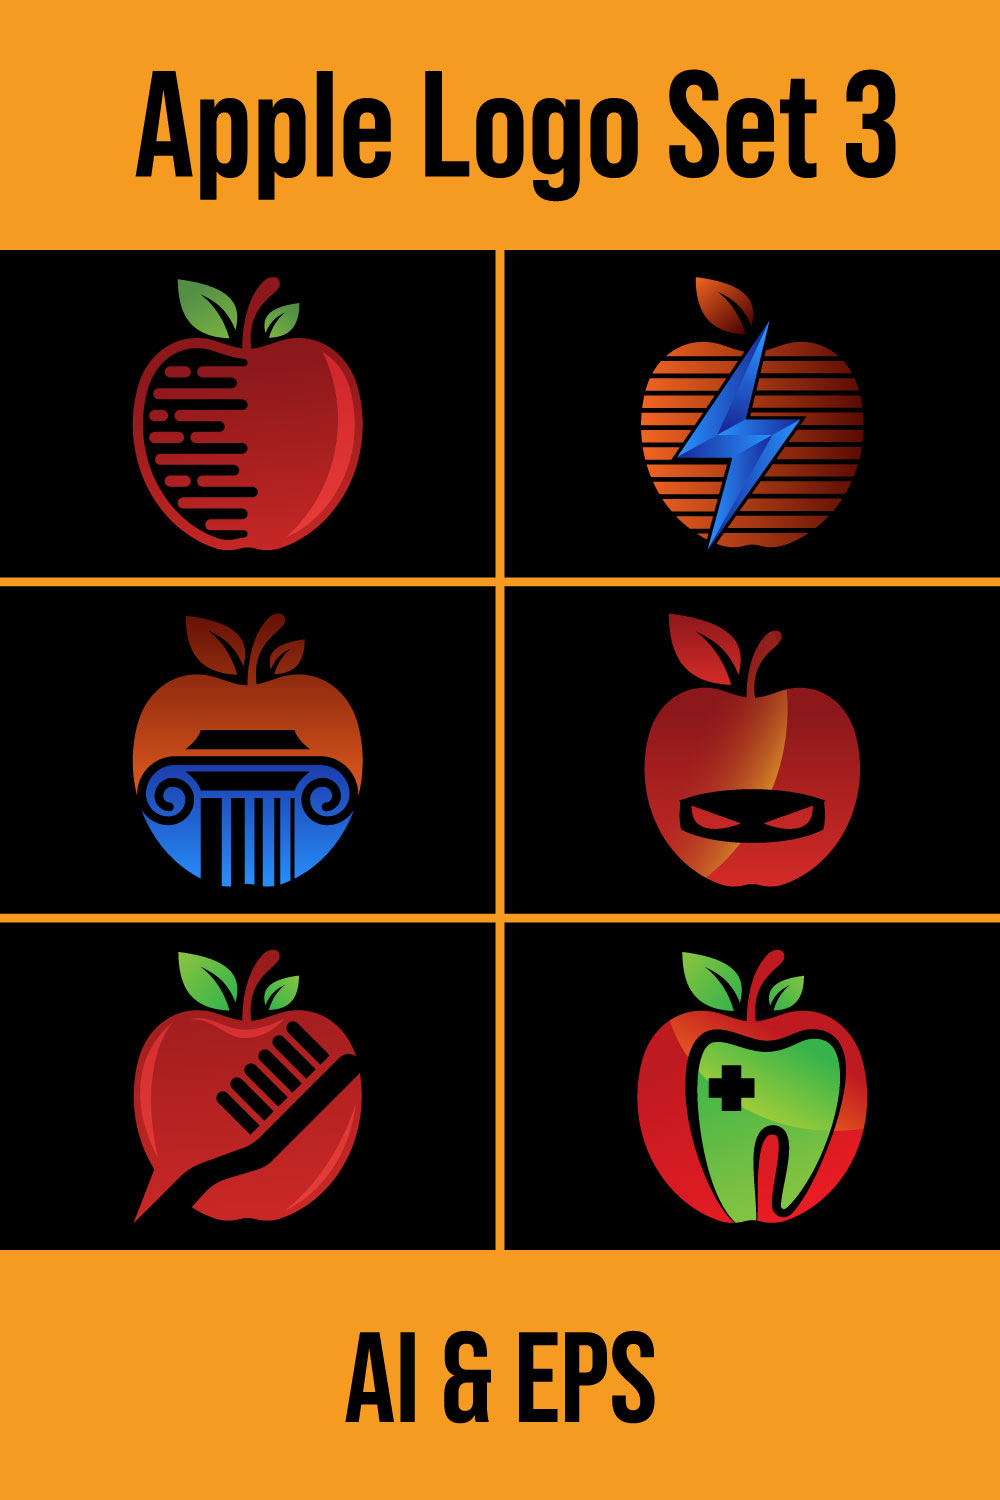 Apple Logo Design Set Pinterest.